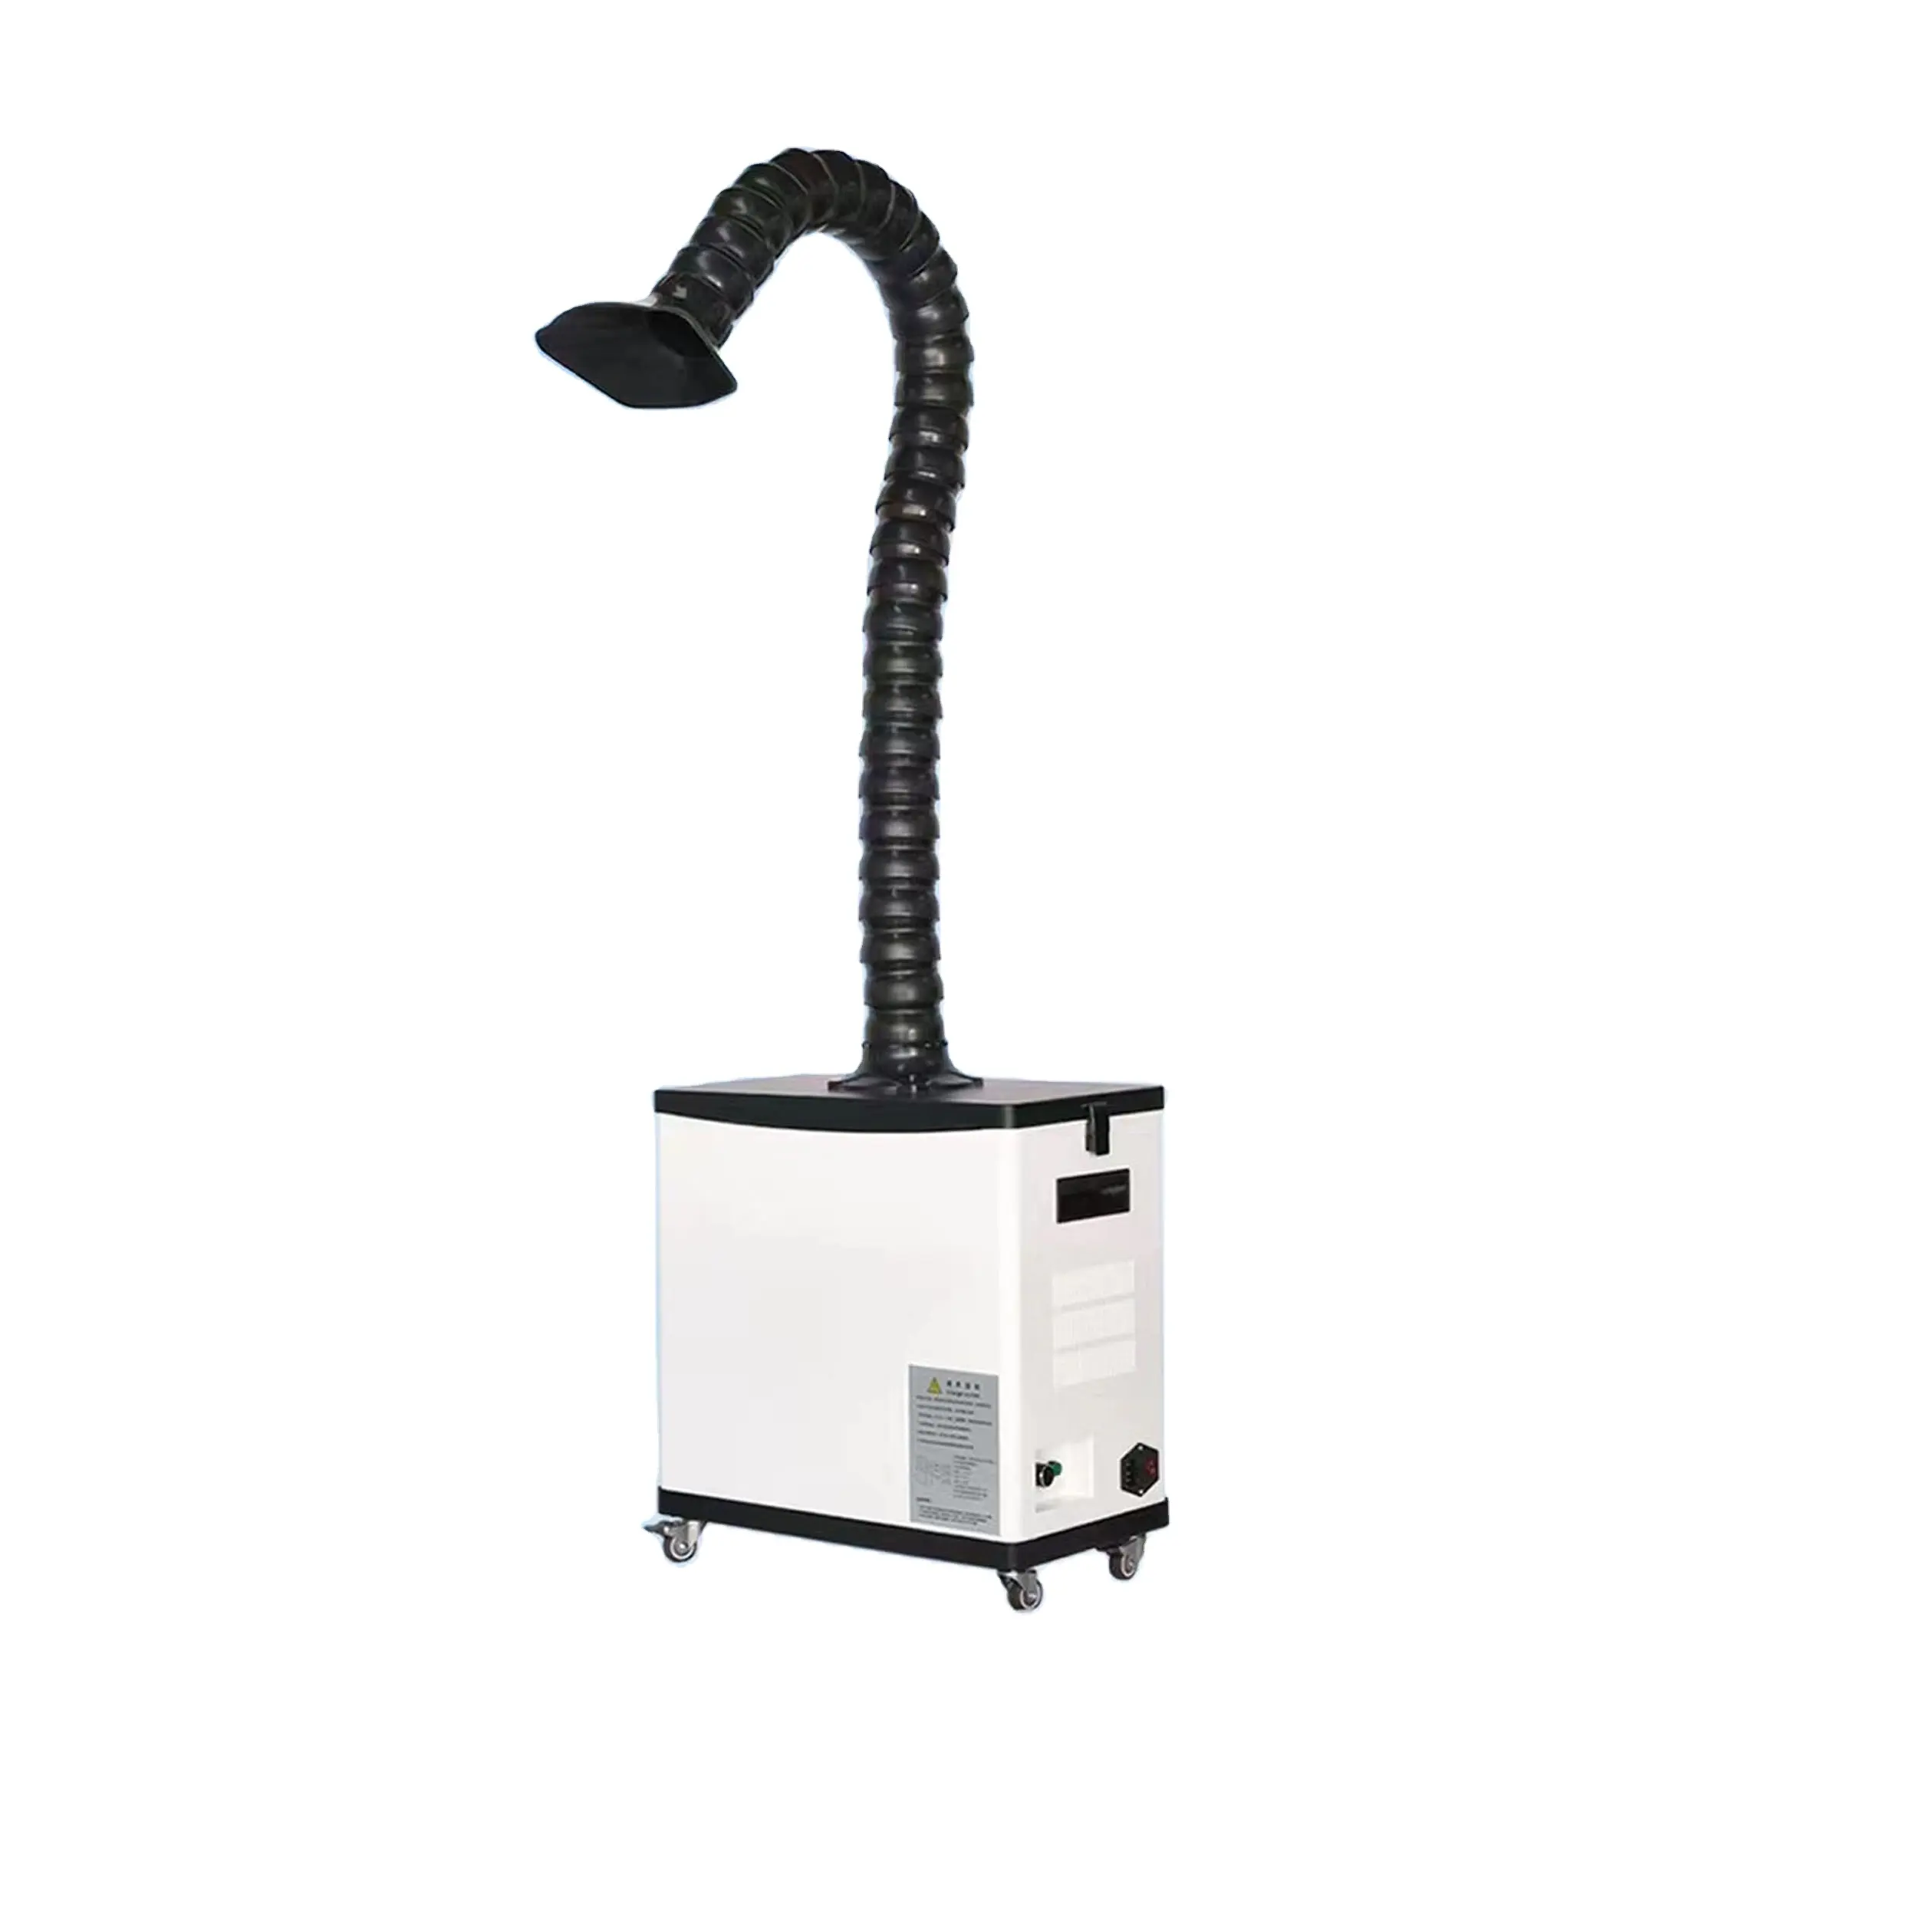 Imprimante imprimante DTF, machine à secouer, purificateur d'air en poudre, filtre à fumée pour four DTF en vente chaude